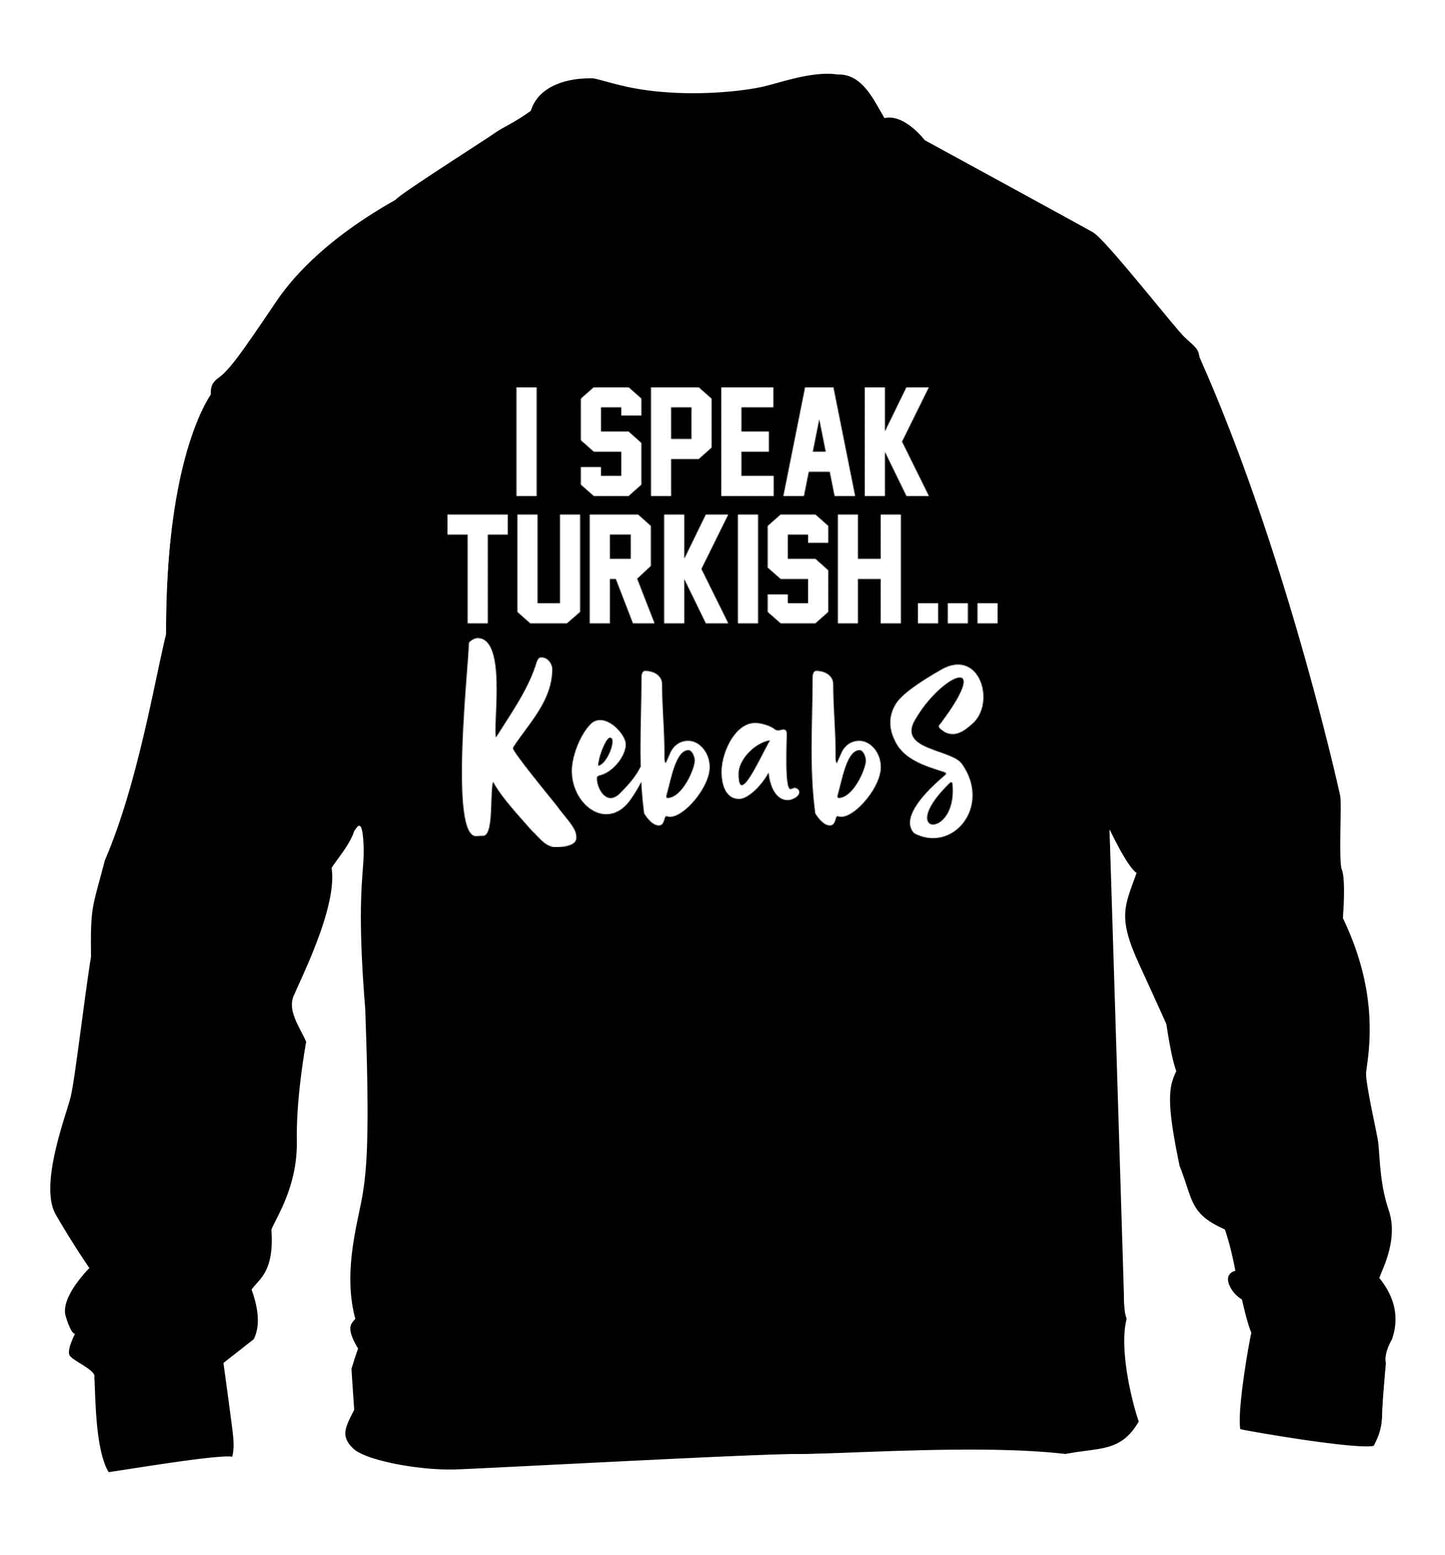 I speak Turkish...kebabs children's black sweater 12-13 Years